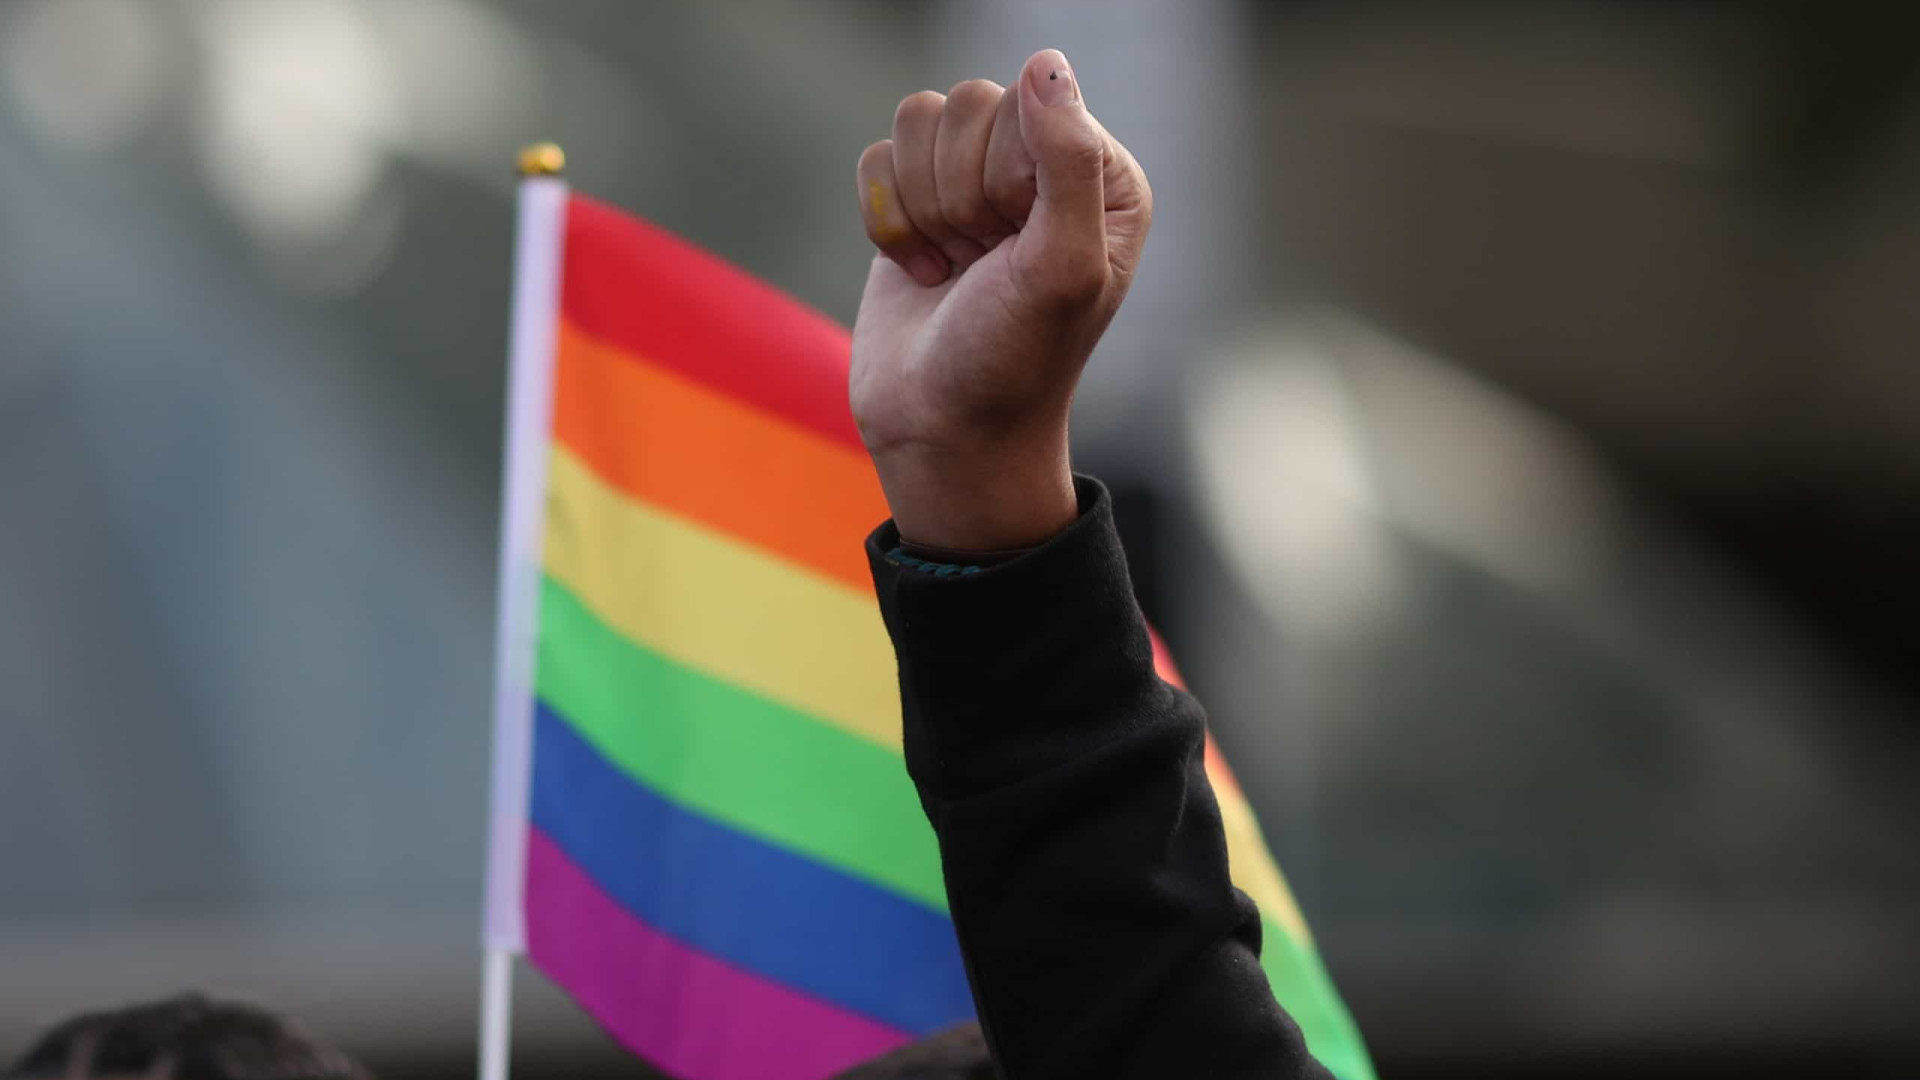 Quatro em cada dez LGBTQIAP+ diz ter sofrido discriminação no trabalho